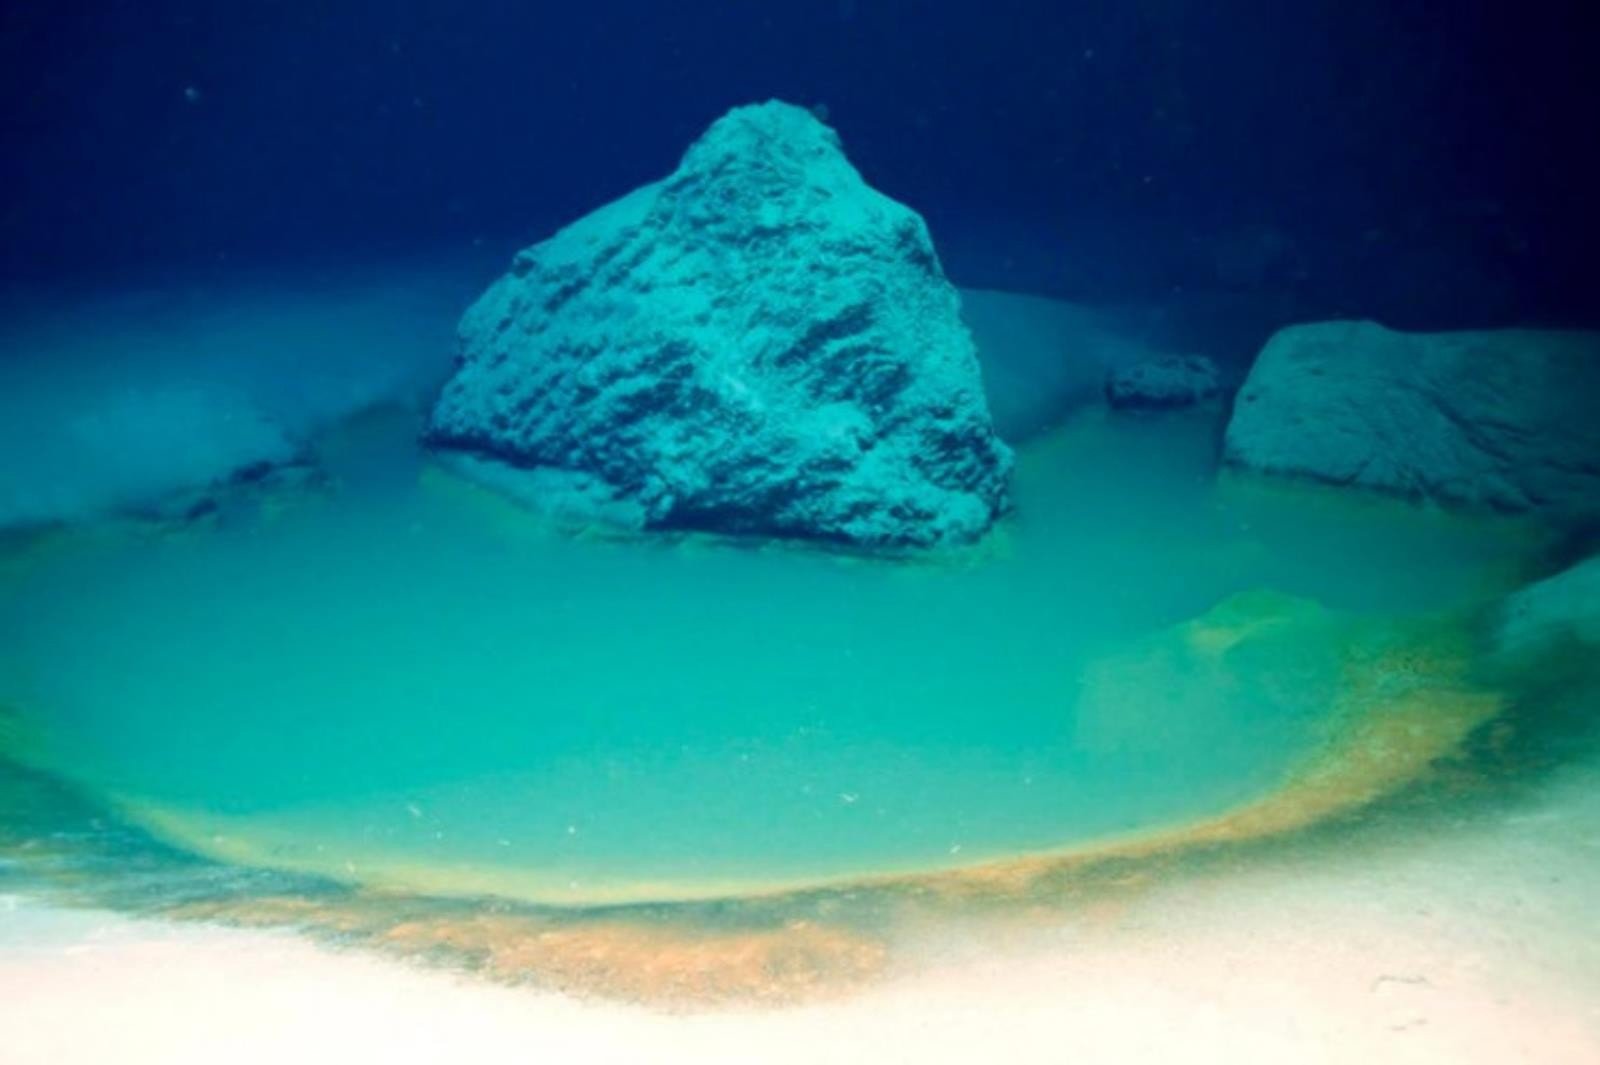 Niesamowite odkrycie na dnie Morza Czerwonego, proces zwalczania raka i pojęcie tajemnic życia pozaziemskiego